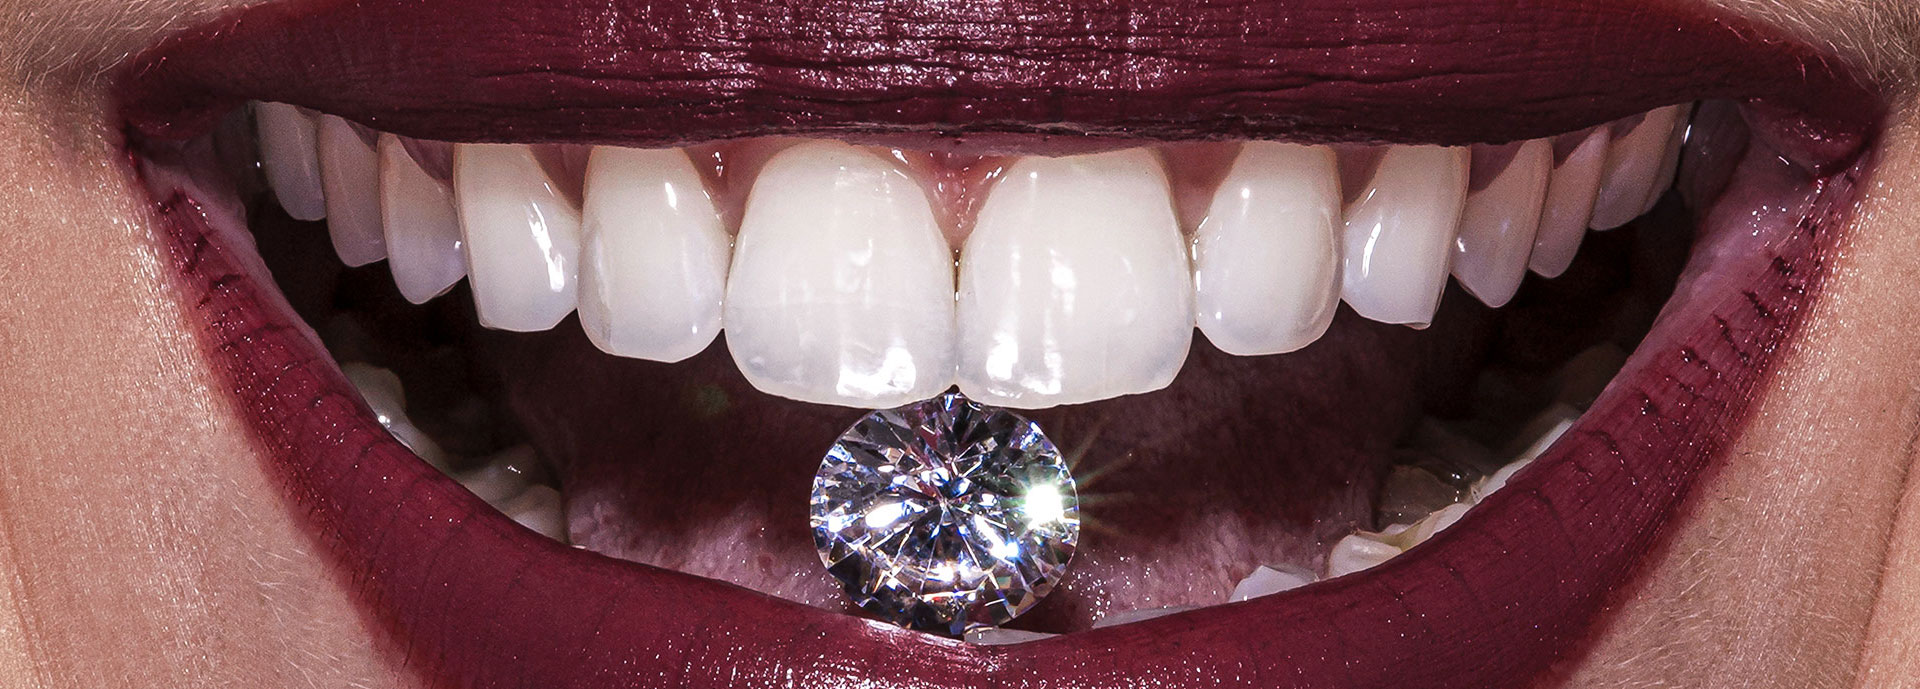 boca whiteness - Fotografia na odontologia: uma forma inovadora de potencializar seu trabalho